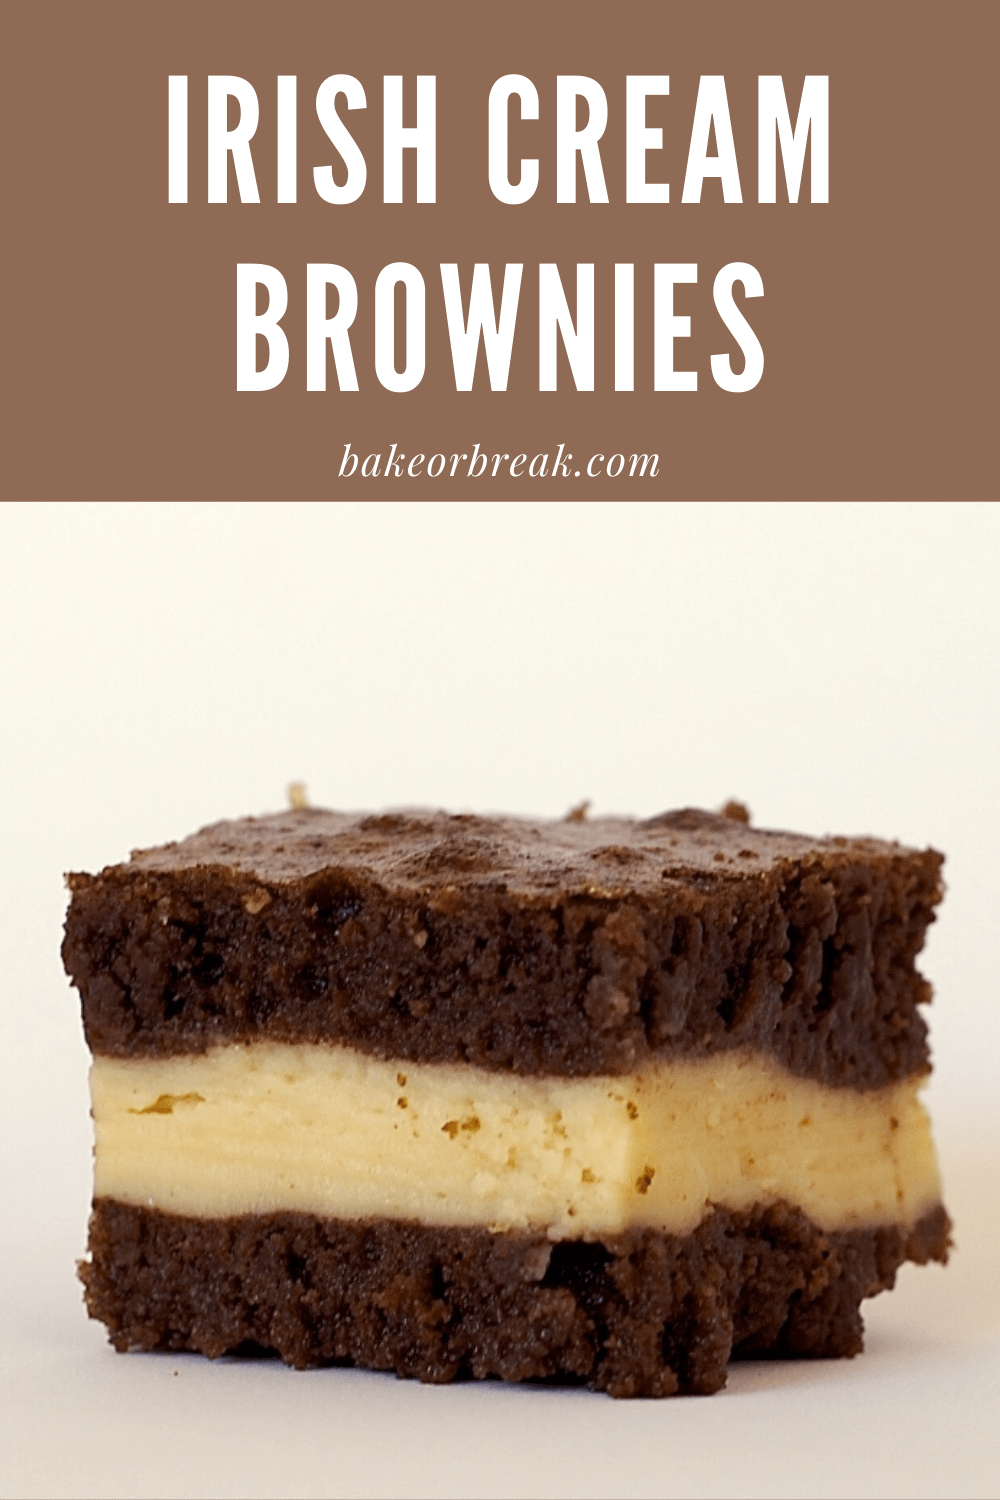 Irish Cream Brownies bakeorbreak.com